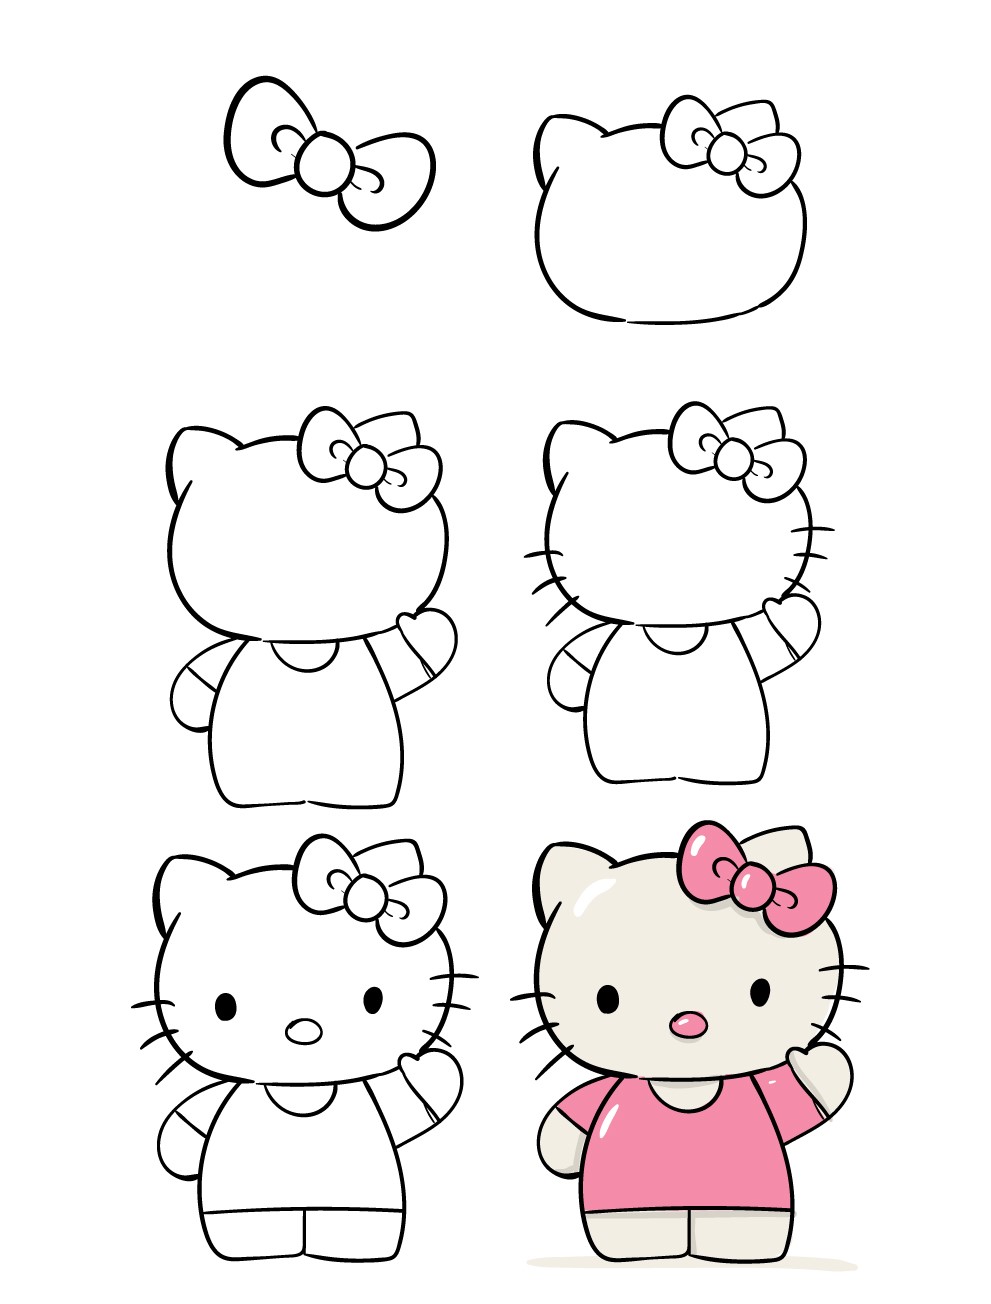 Tranh tô màu Hello Kitty dễ thương nhất dành cho bé yêu tập tô  Trường  Tiểu học Thủ Lệ